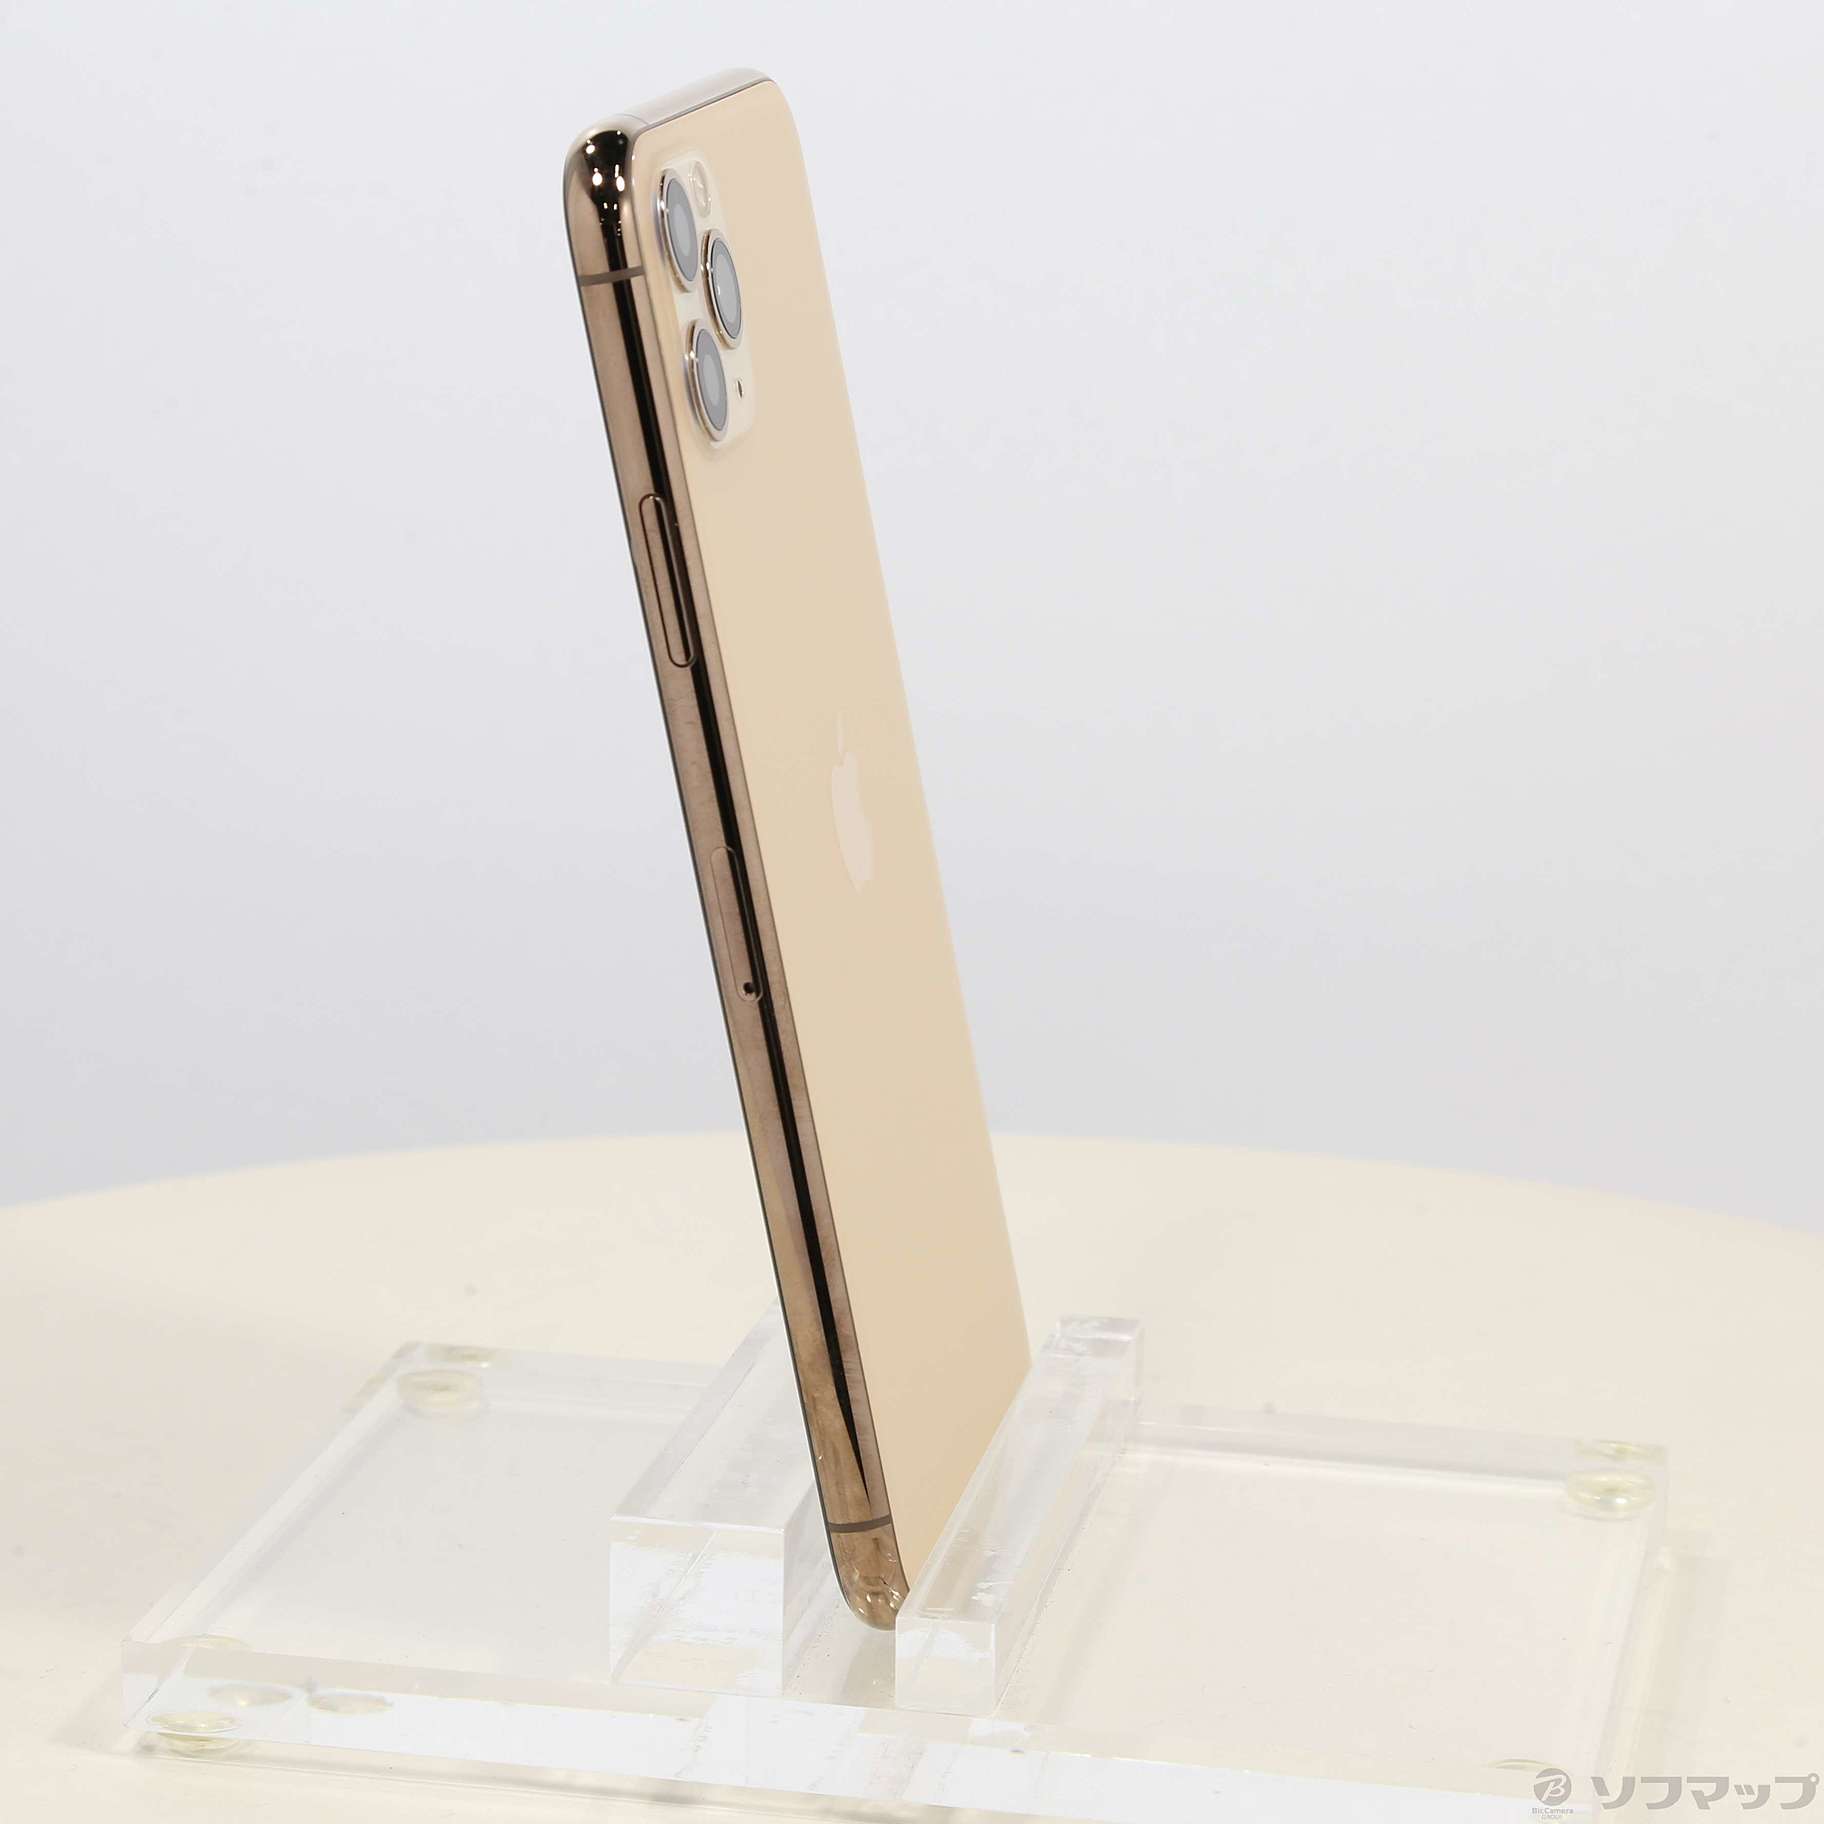 セール対象品 iPhone11 Pro Max 256GB ゴールド MWHL2J／A SIMフリー